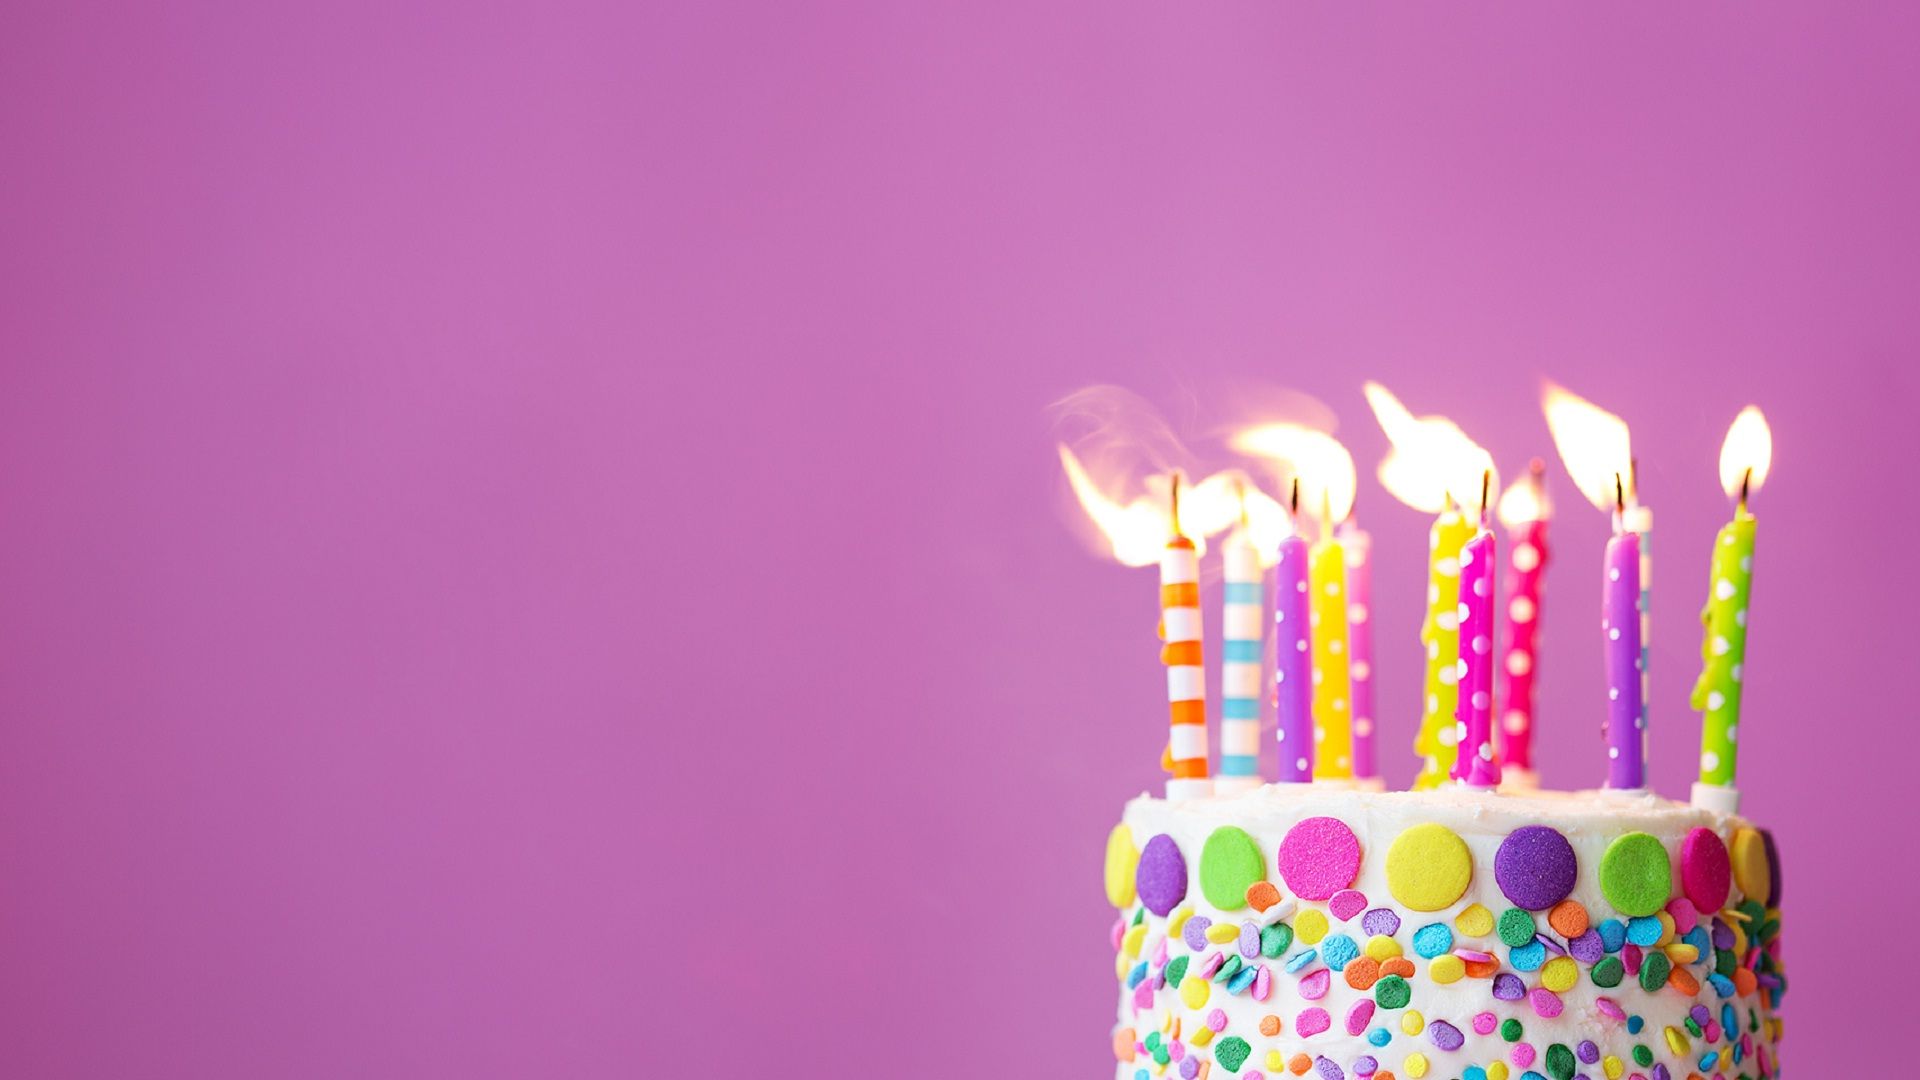 sfondo del mese di compleanno,torta,compleanno,torta di compleanno,candela di compleanno,dolcezza